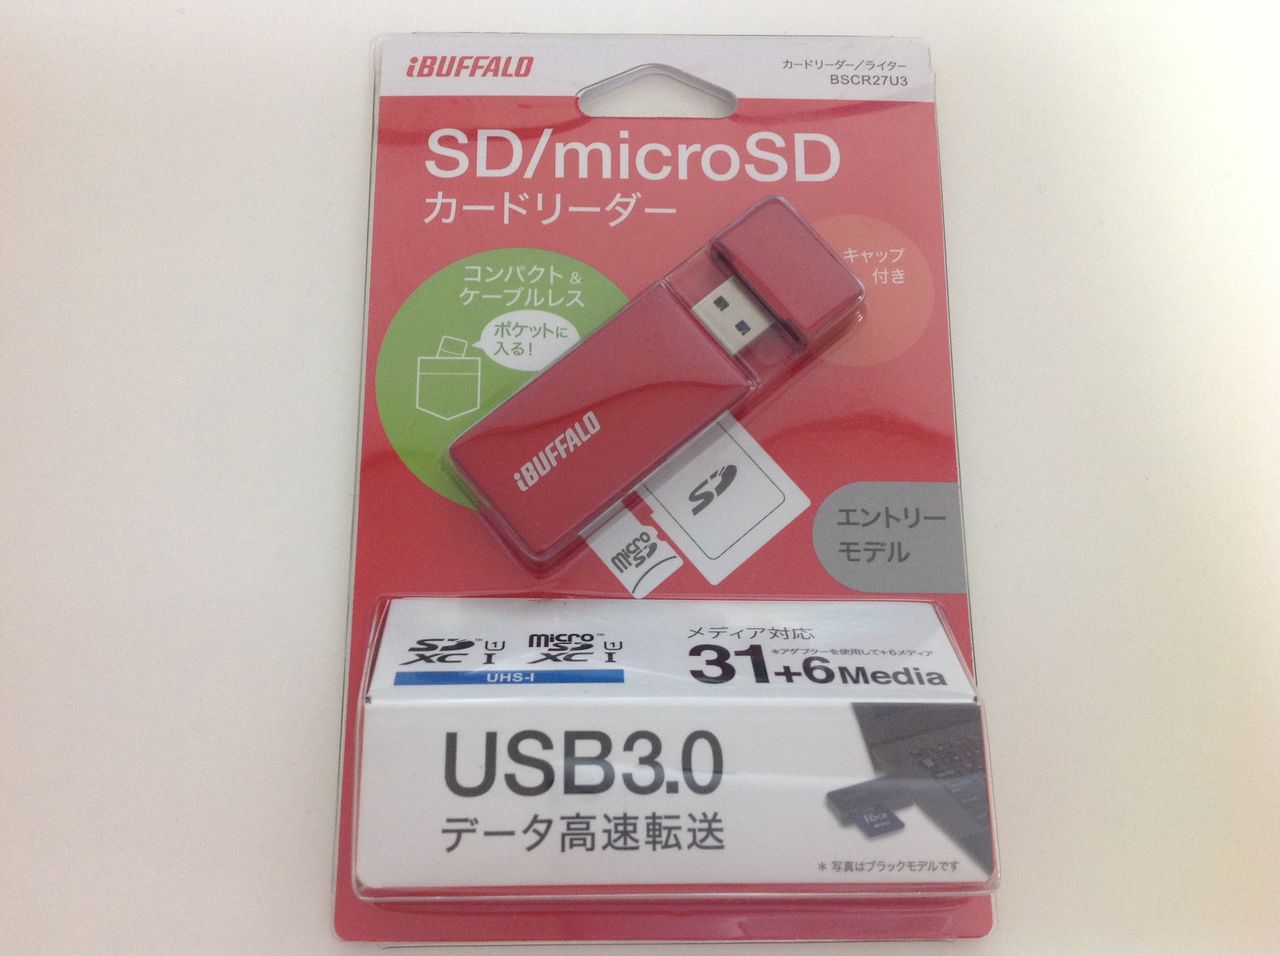 マート BUFFALO バッファロー USB3.0 microSD SDカード専用カードリーダー レッド BSCR27U3RD shipsctc.org